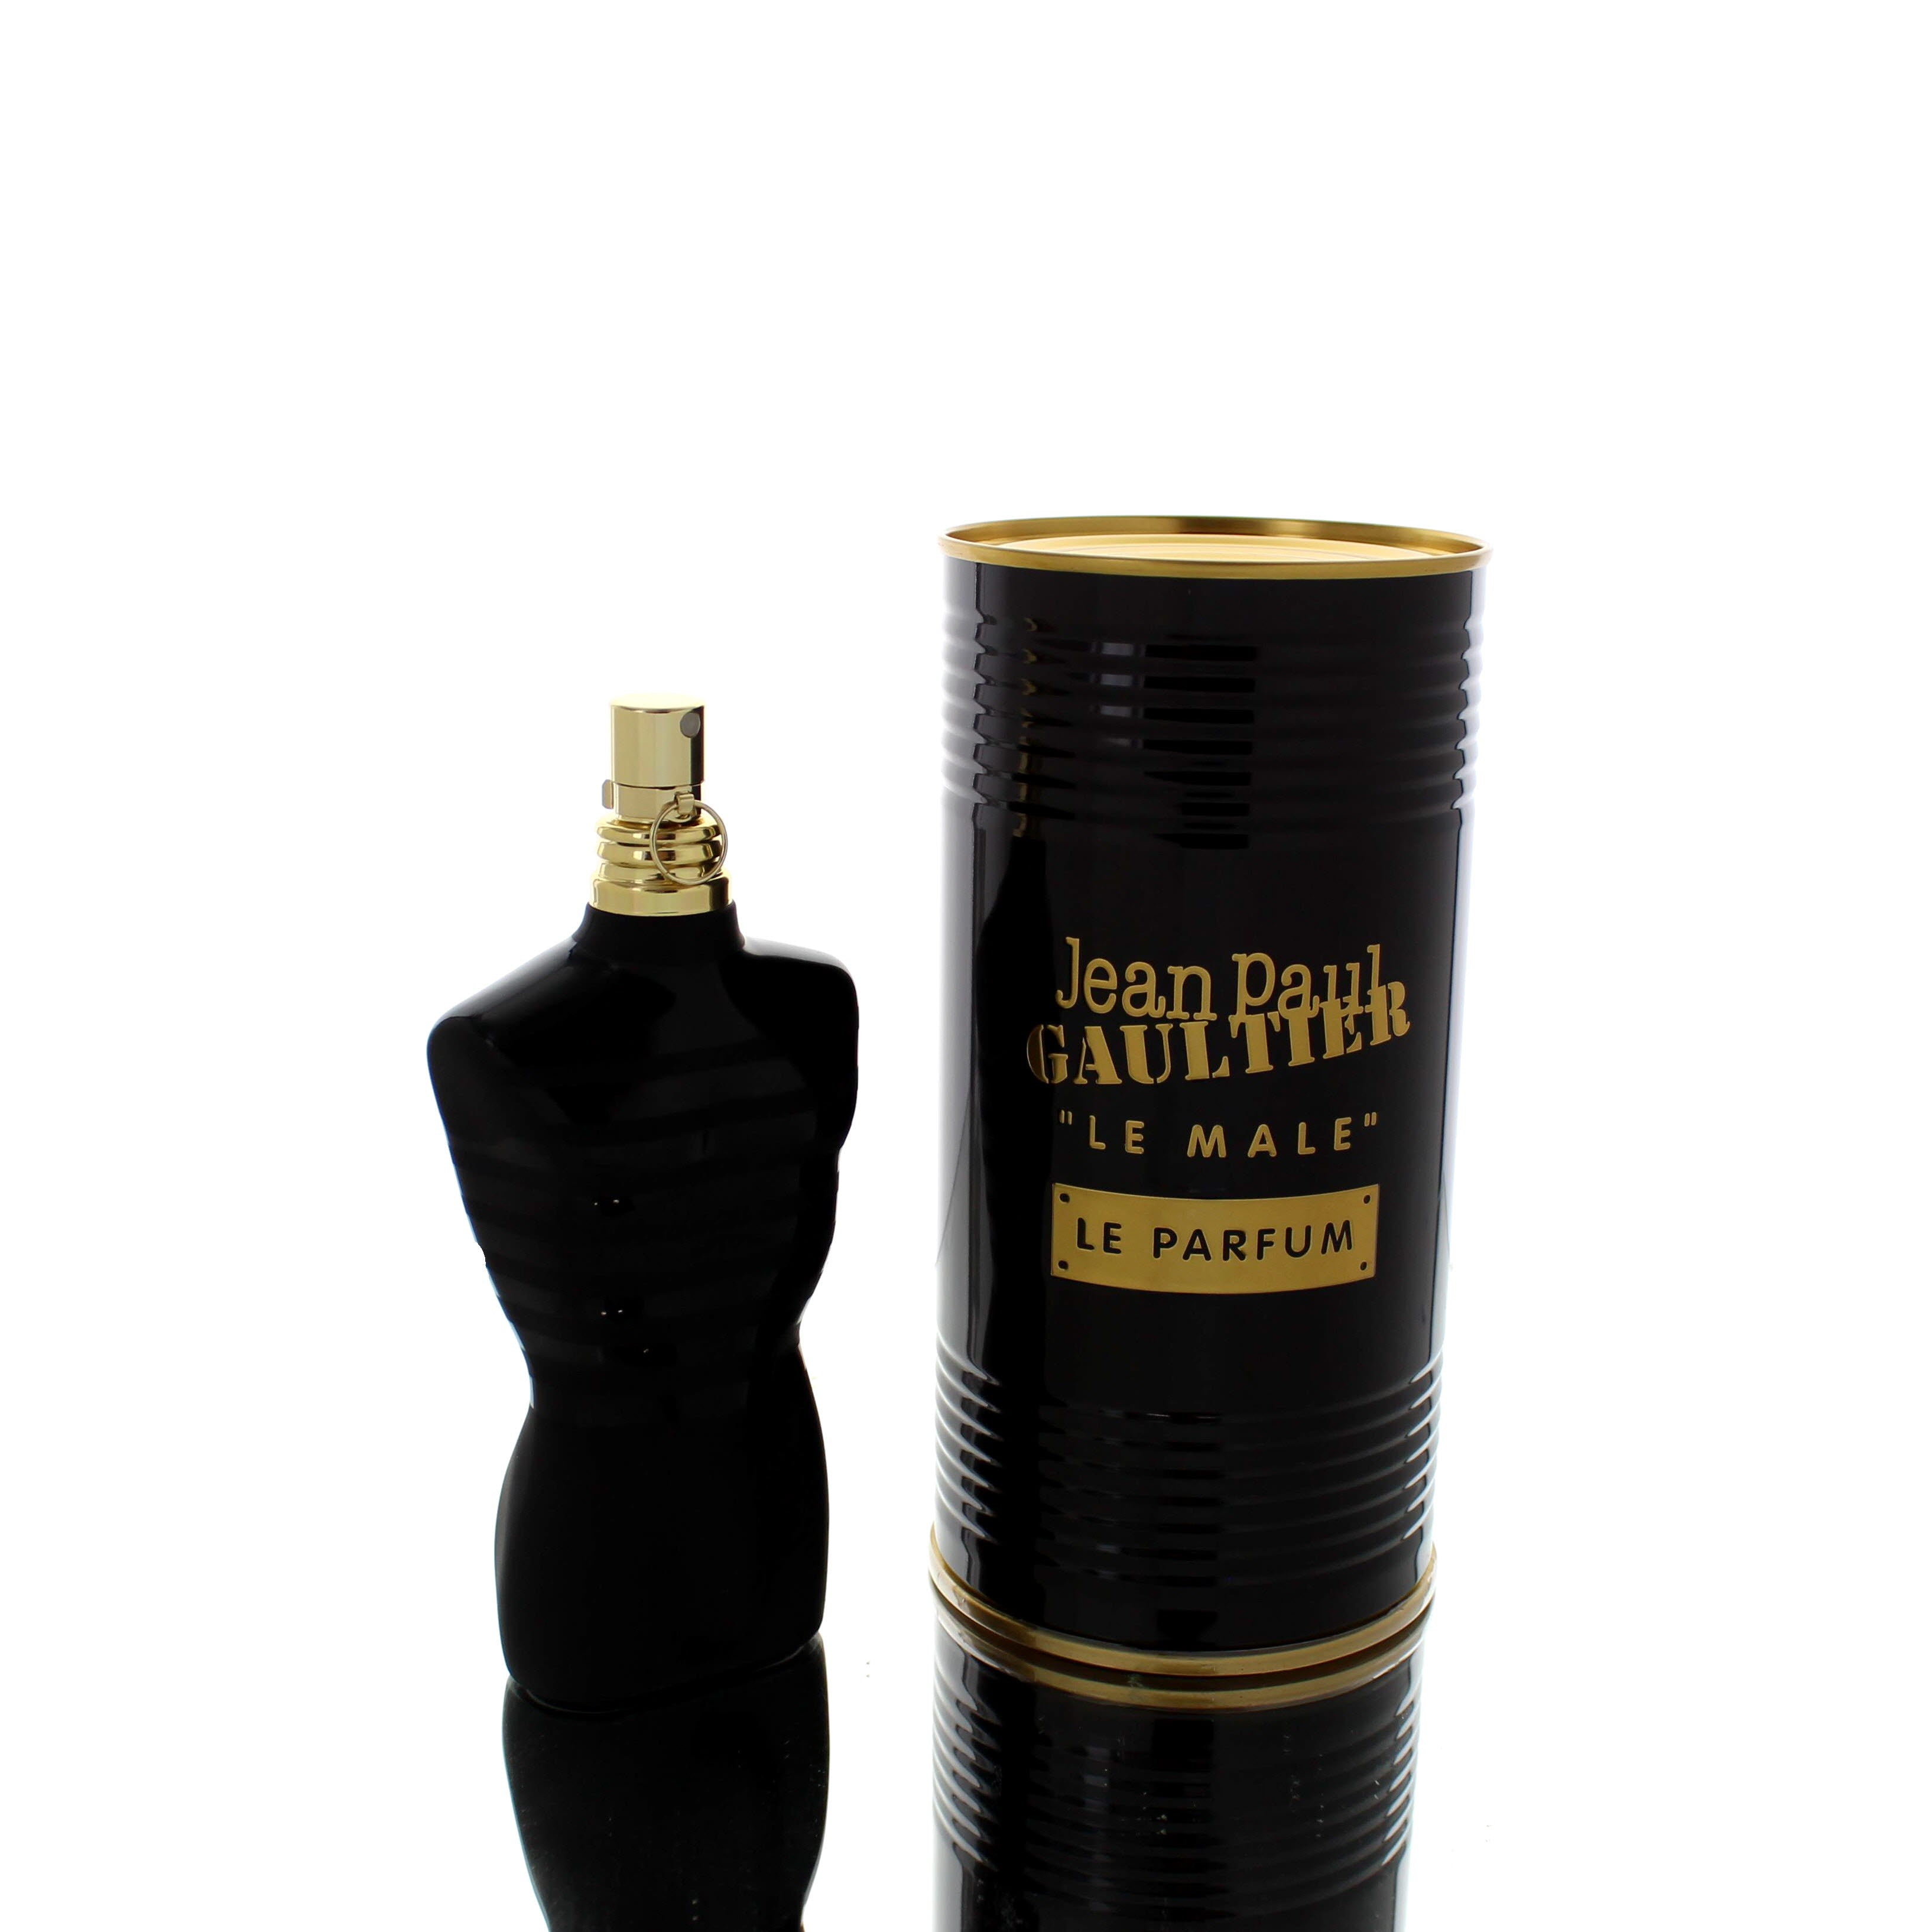 Jean Paul Gaultier Le Male Le Parfum EDP Intense (Black Bottle) M 125ml Boxed